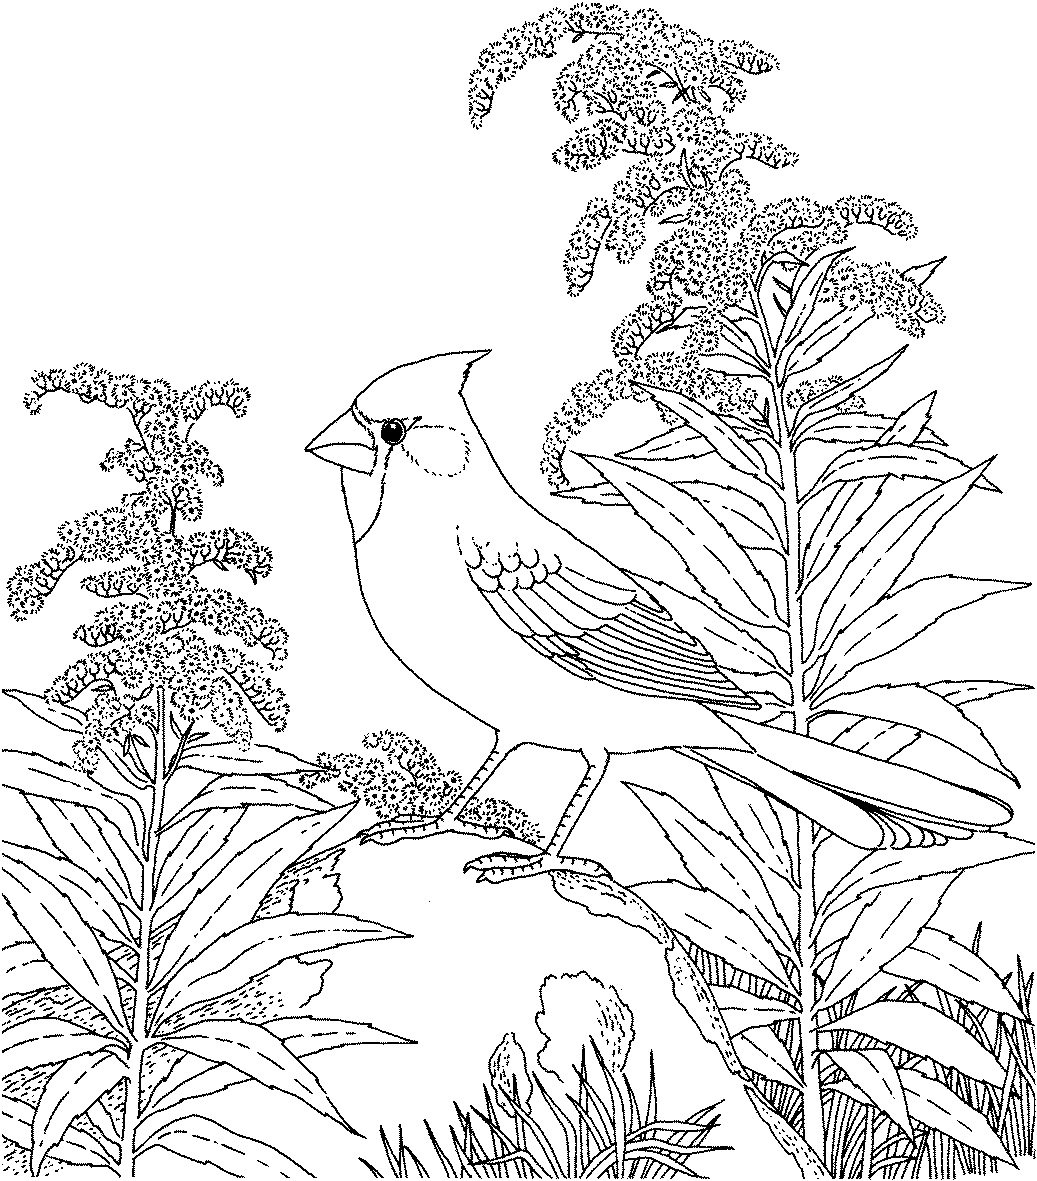   Раскраски дикие птицы жаворонок